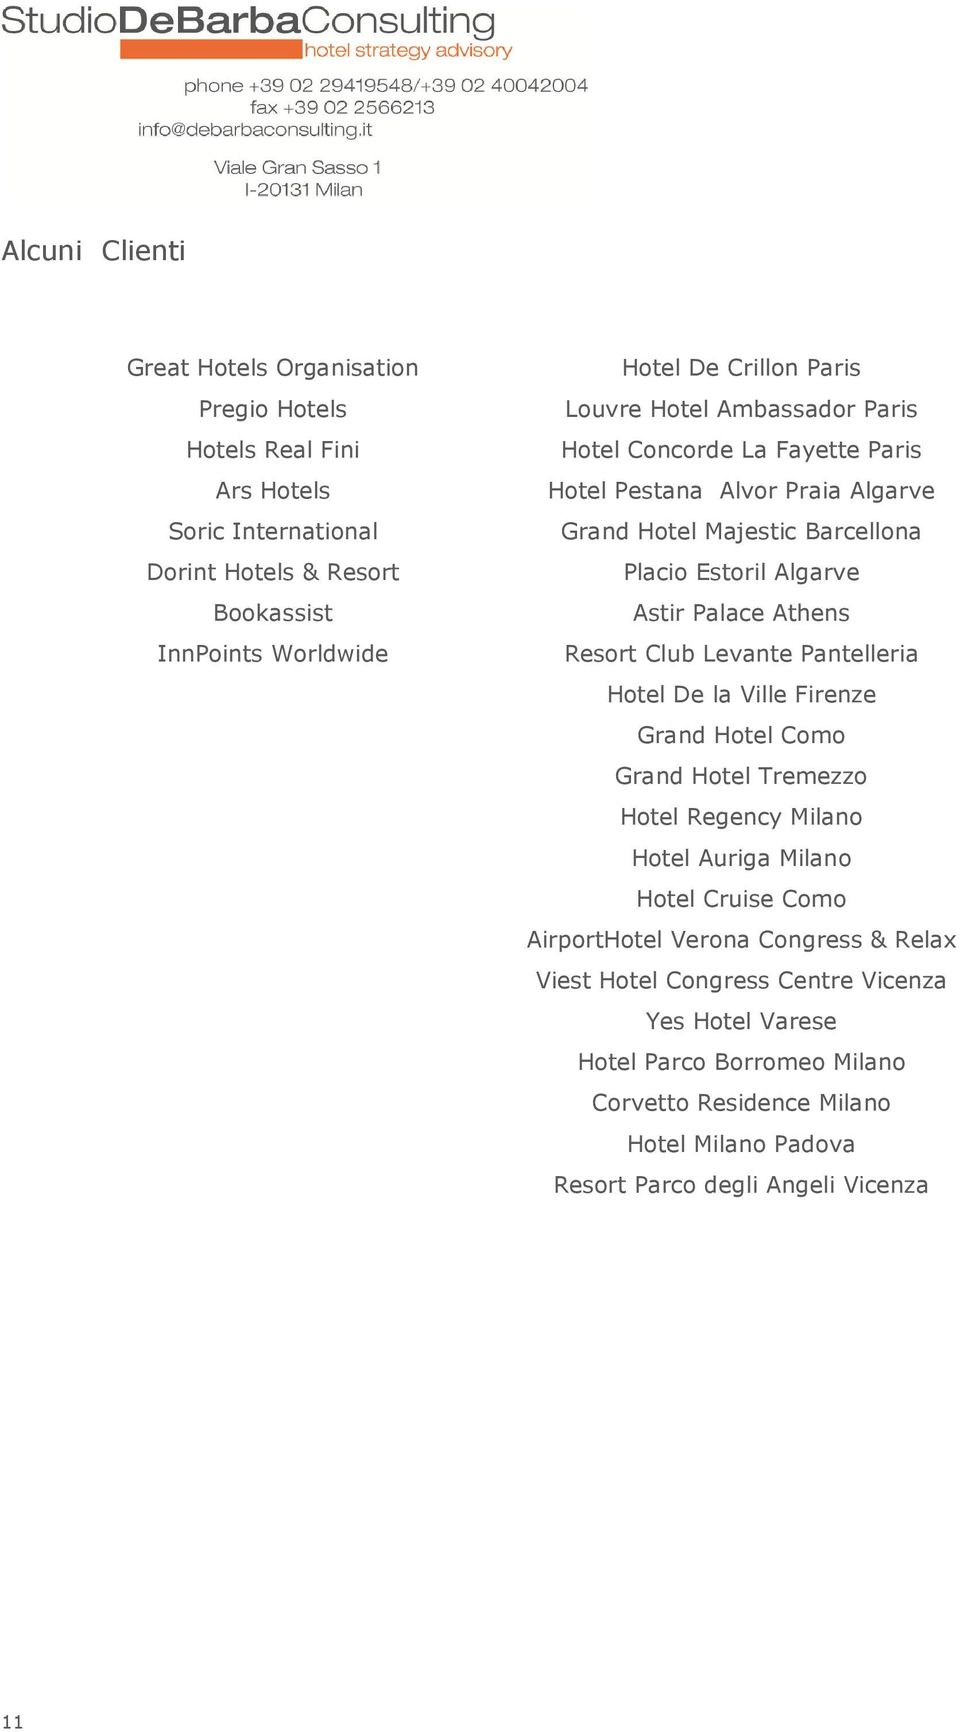 Resort Club Levante Pantelleria Hotel De la Ville Firenze Grand Hotel Como Grand Hotel Tremezzo Hotel Regency Milano Hotel Auriga Milano Hotel Cruise Como AirportHotel Verona